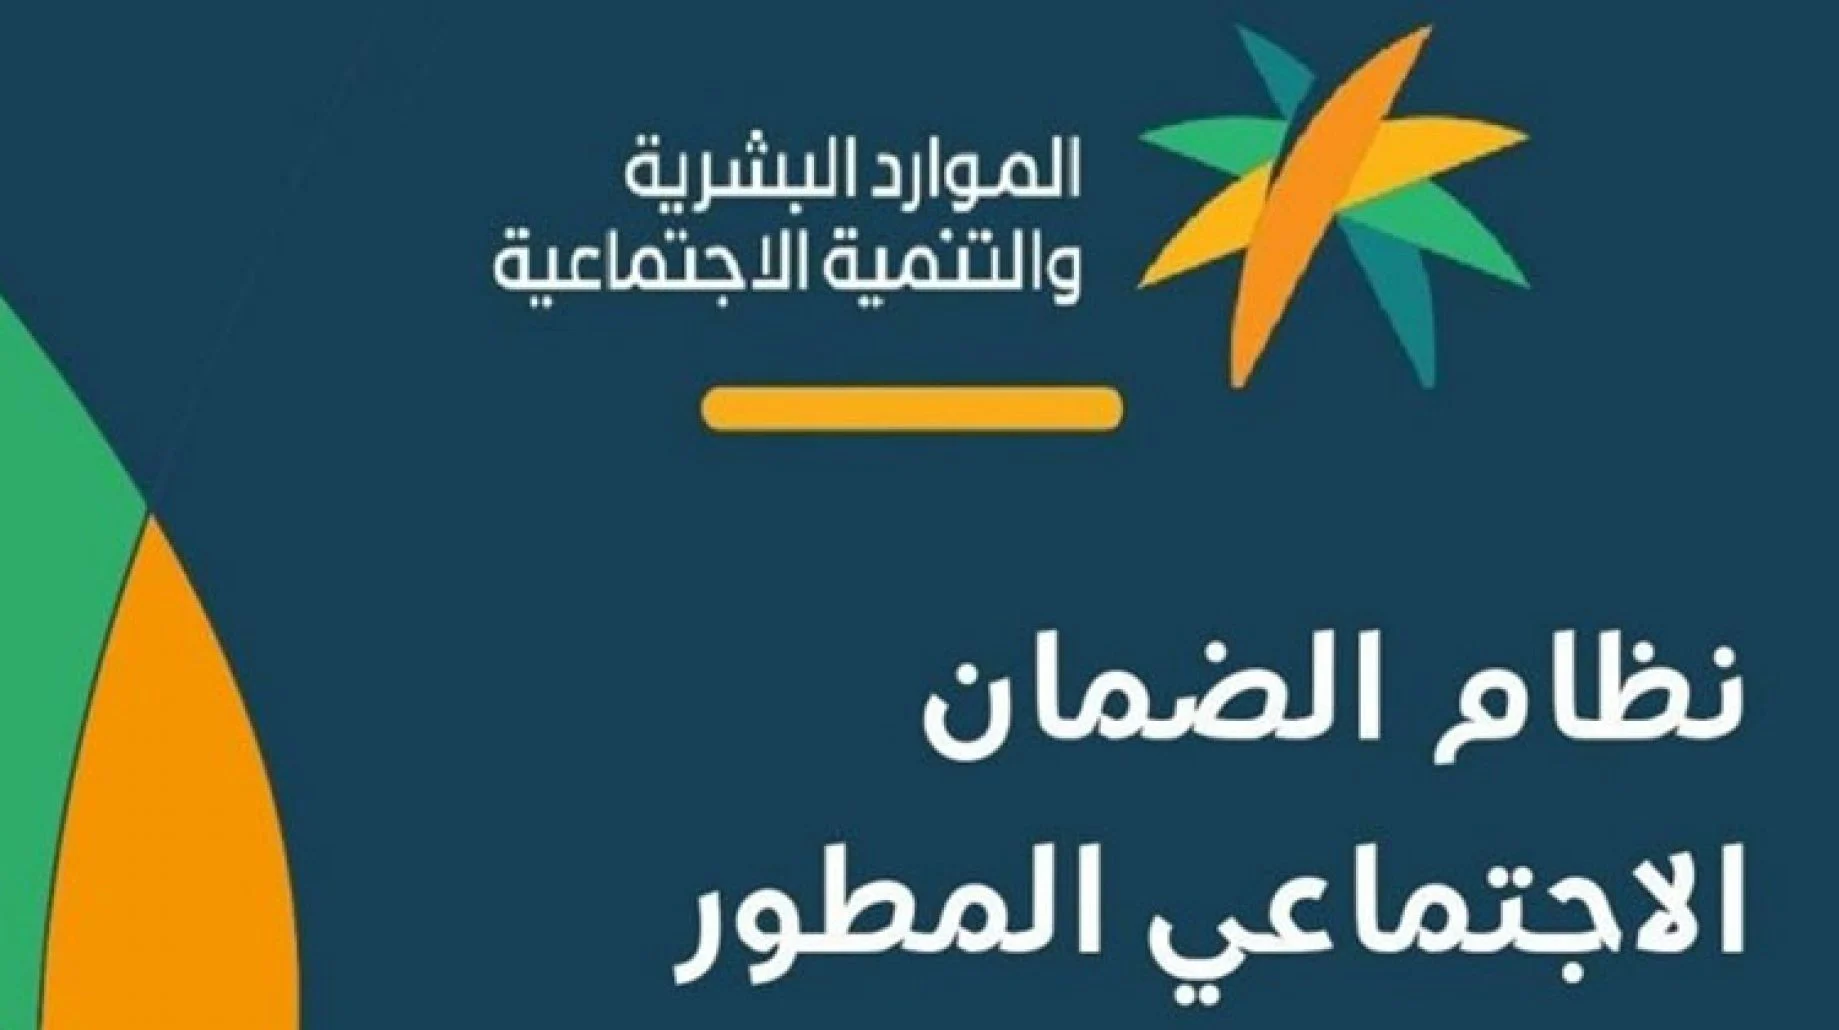 “شغال” موقع تسجيل في الضمان الاجتماعي 1444 للمواطنين في السعودية وخطوات تقديم طلب الدعم